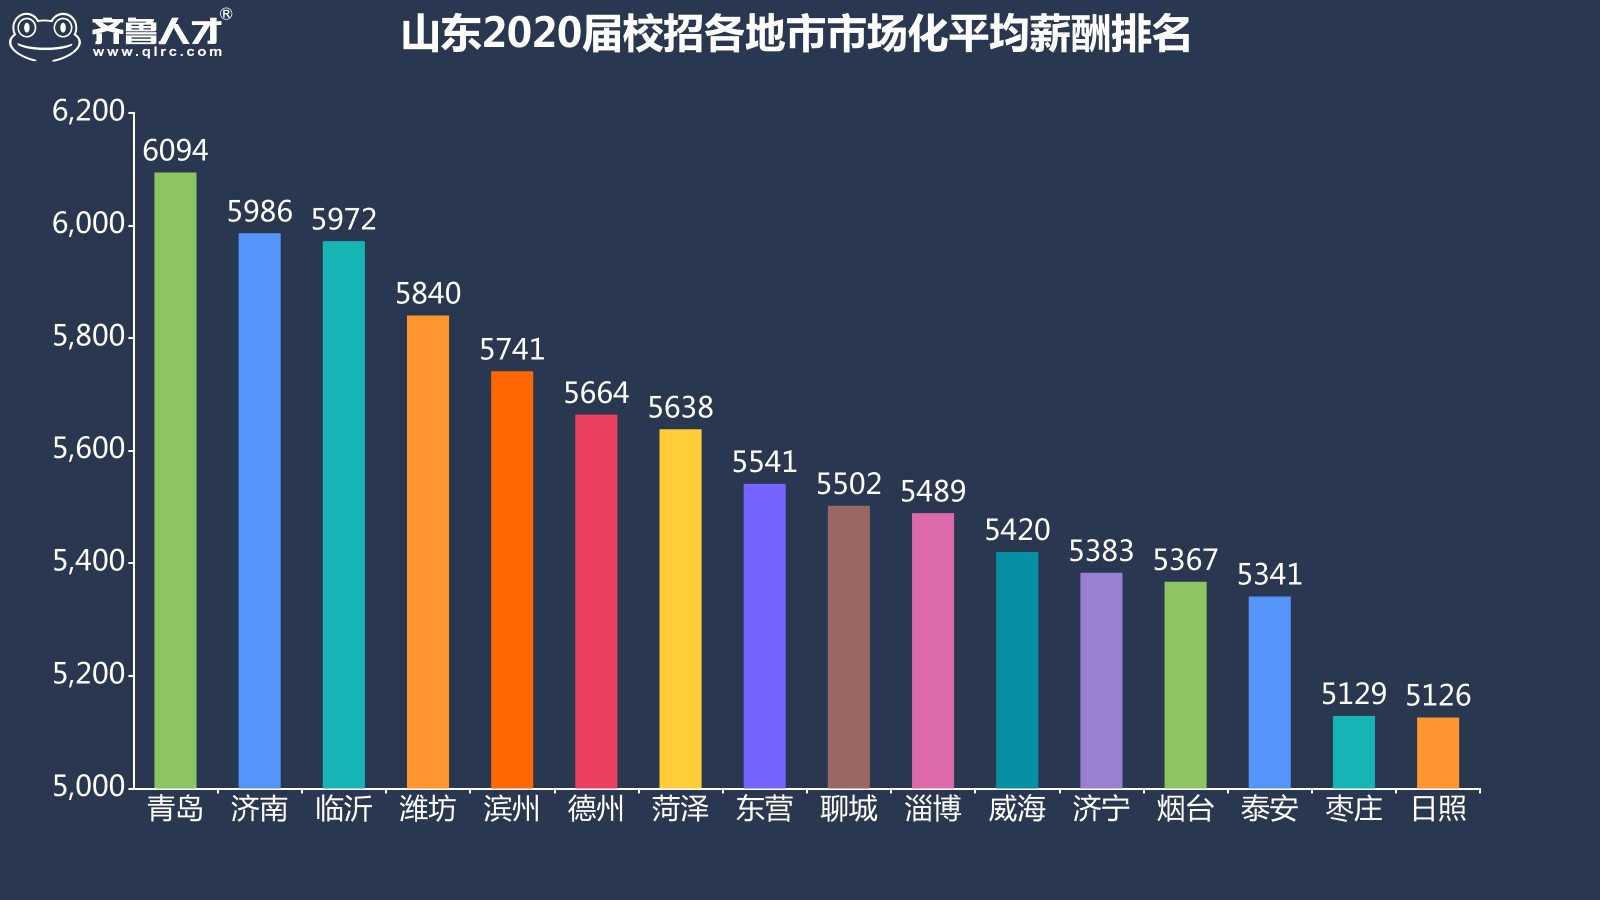 齐鲁人才网济南成为山东2020届高校毕业生就业地首选，平均薪酬达5986元图5.jpg